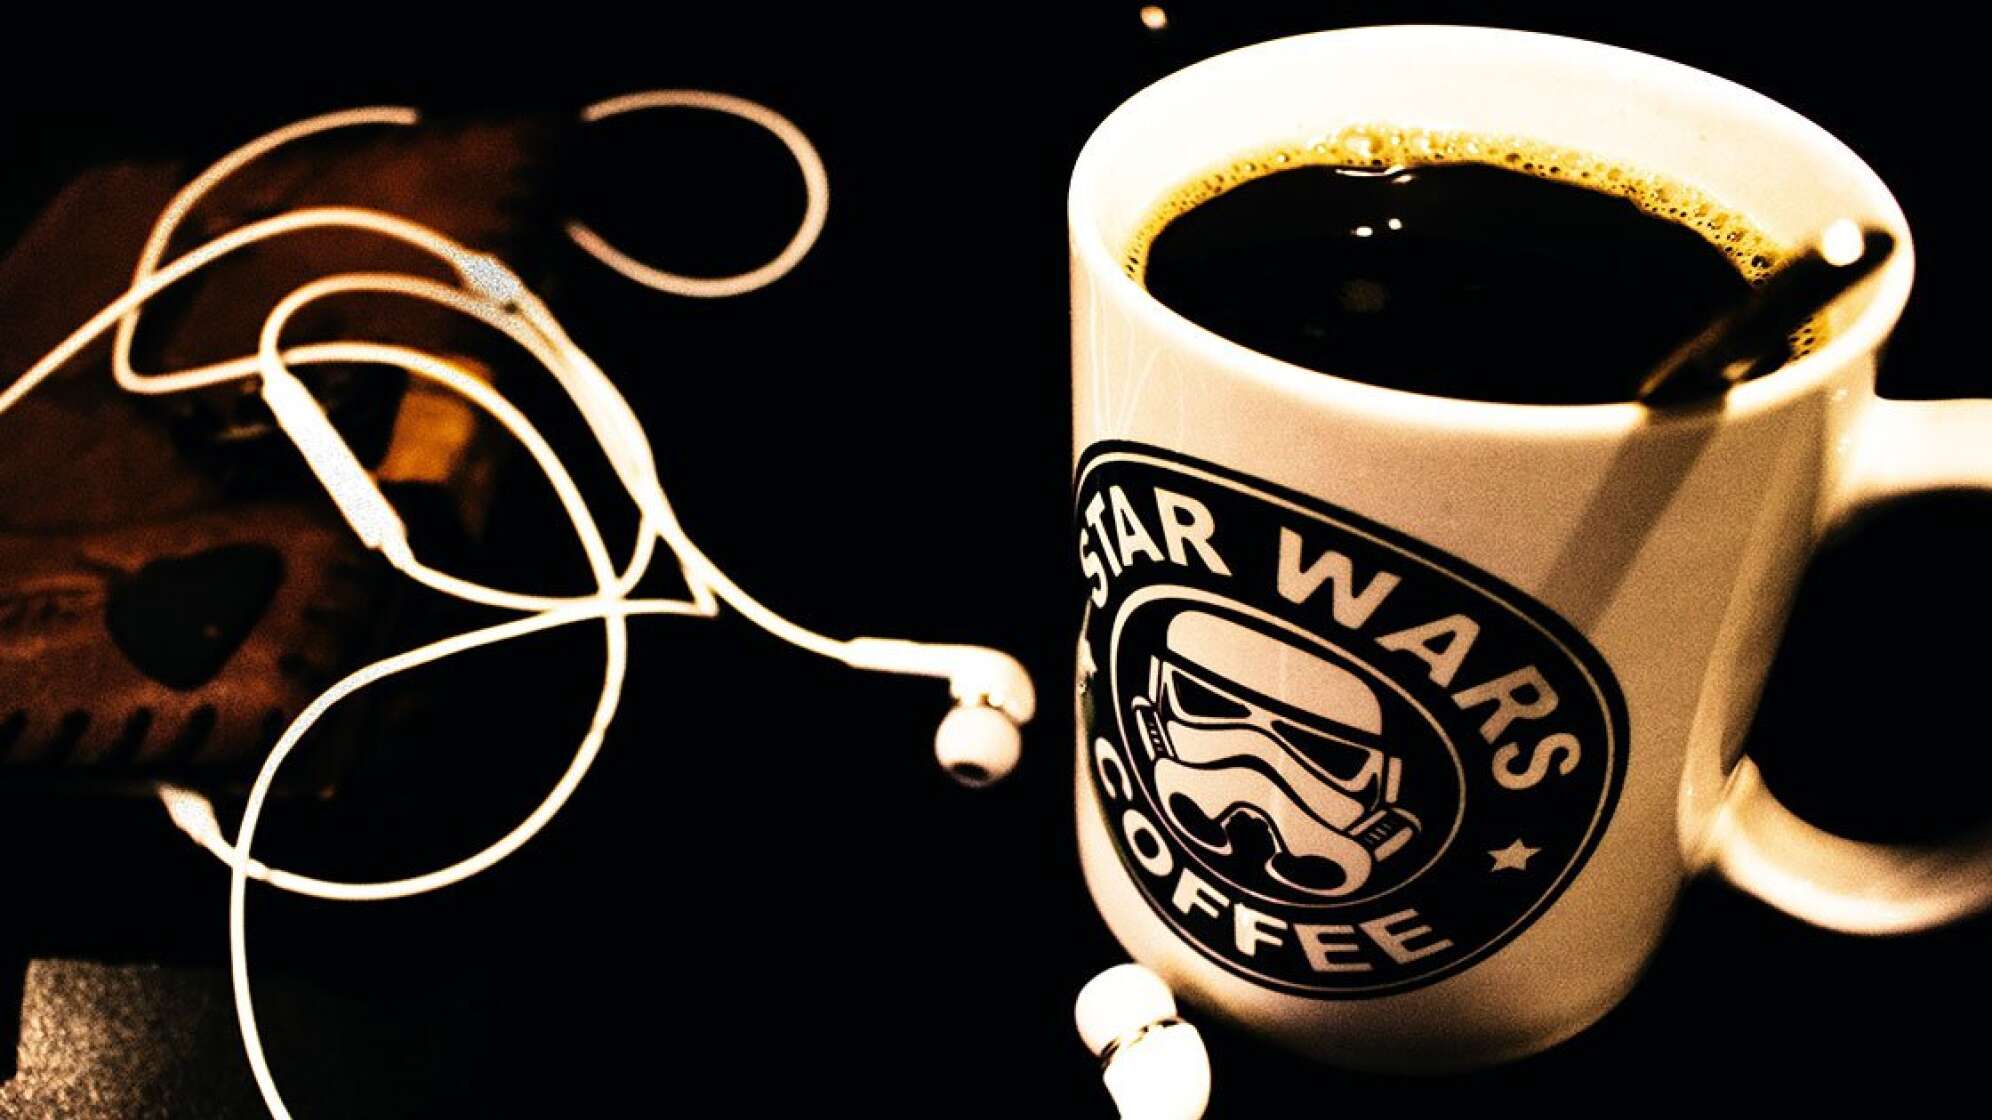 Star Wars Tasse mit Kaffee gefüllt und Kopfhörer daneben